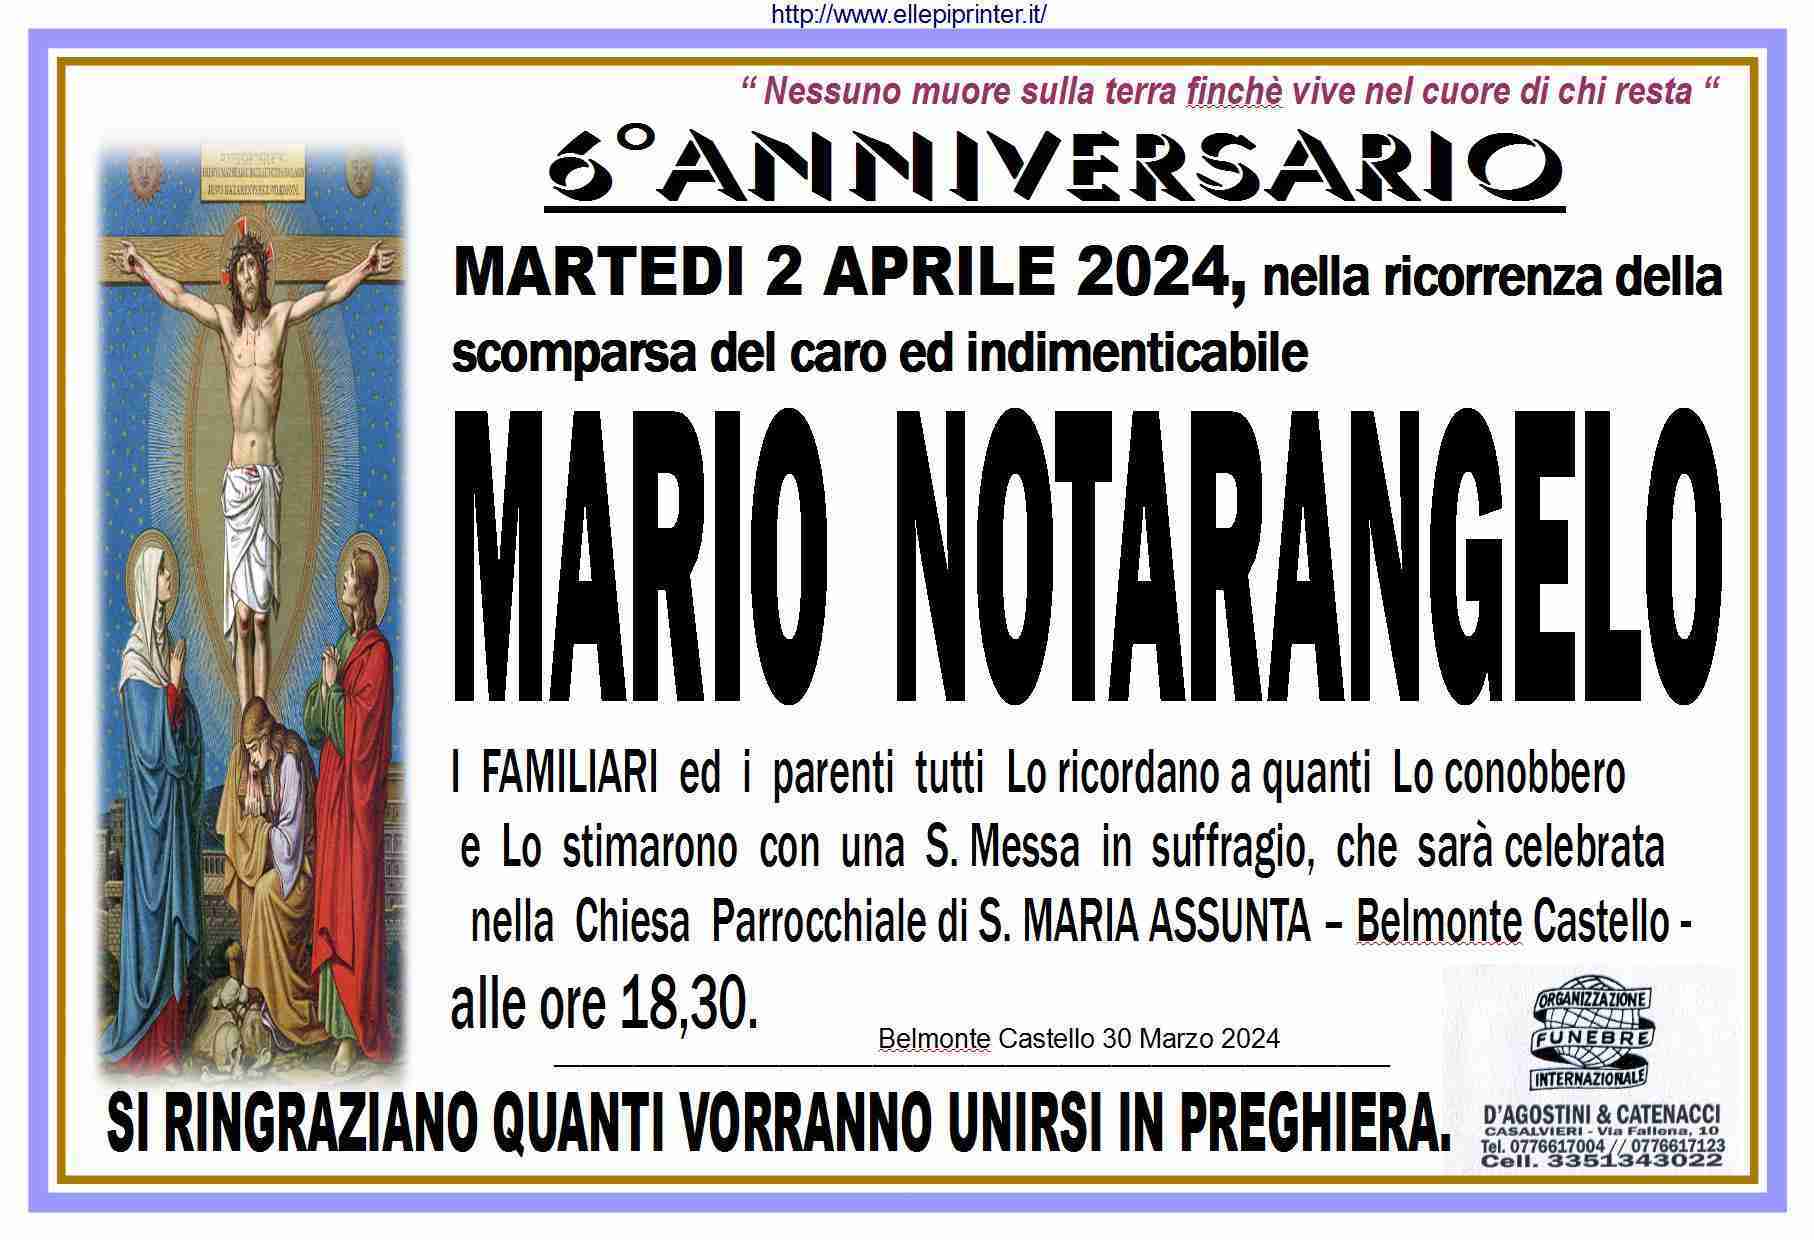 Mario Notarangelo